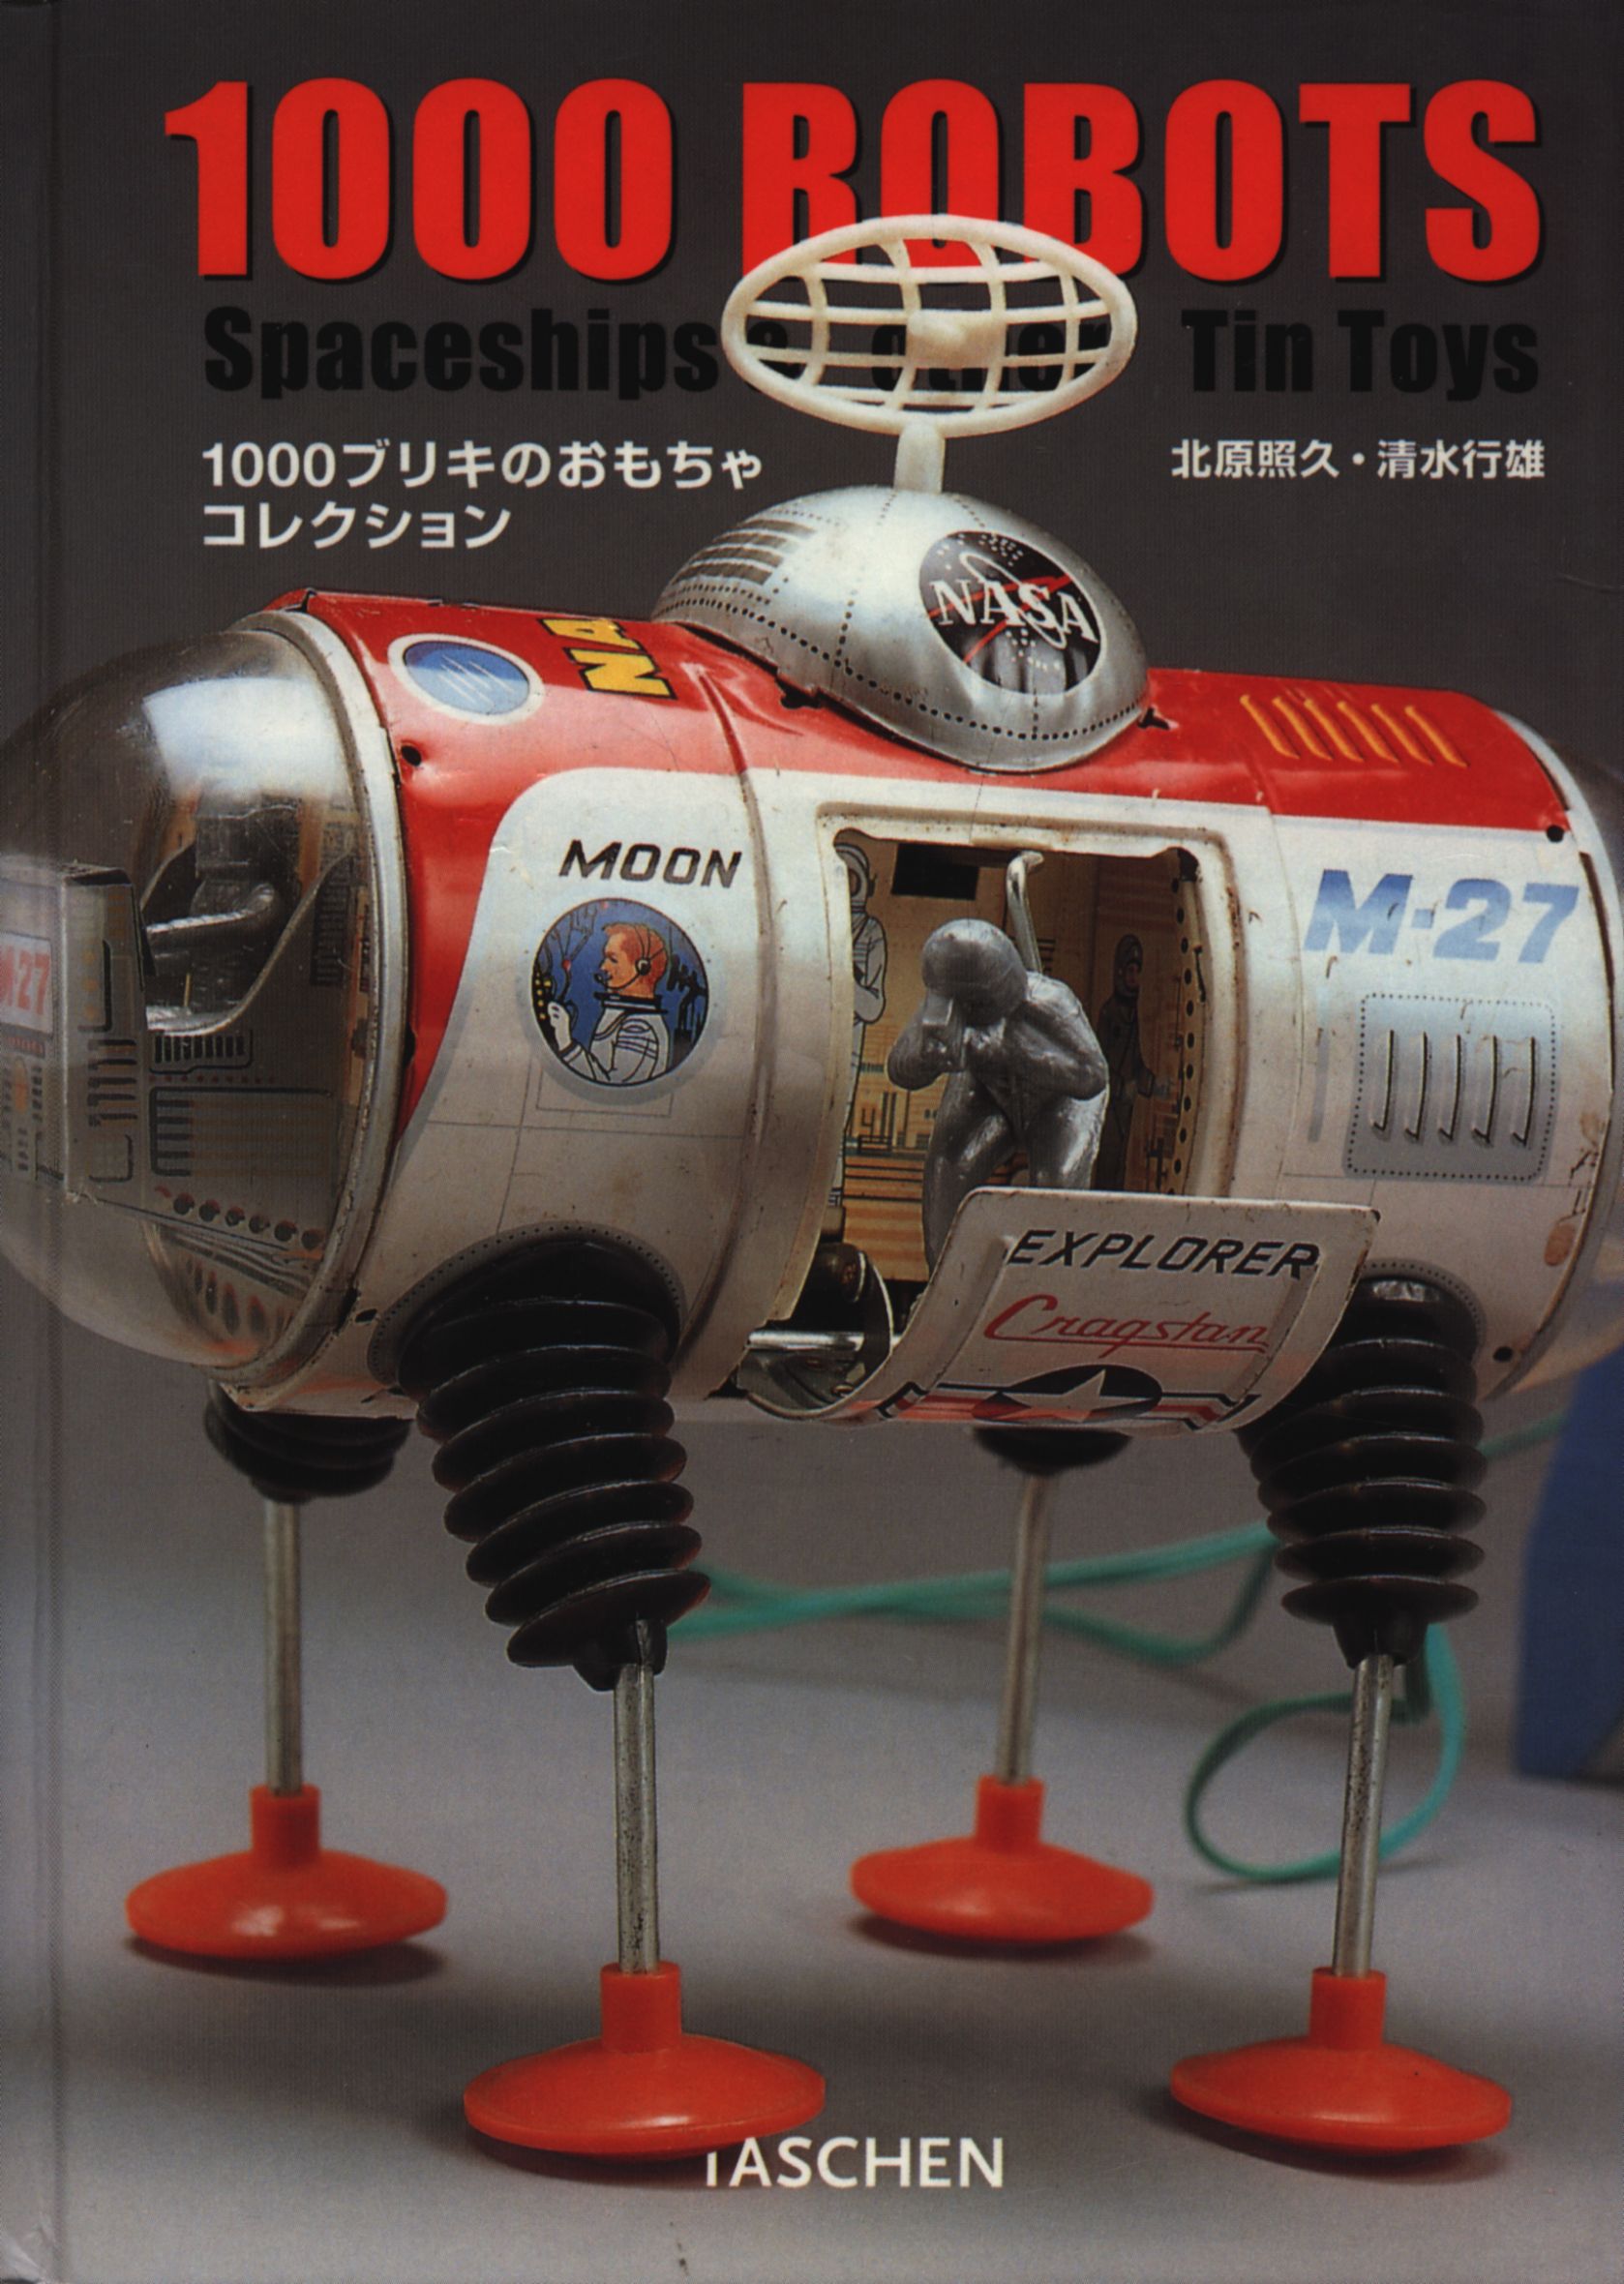 TASHEN 1000ブリキのおもちゃコレクション 1000 ROBOTS - アート 